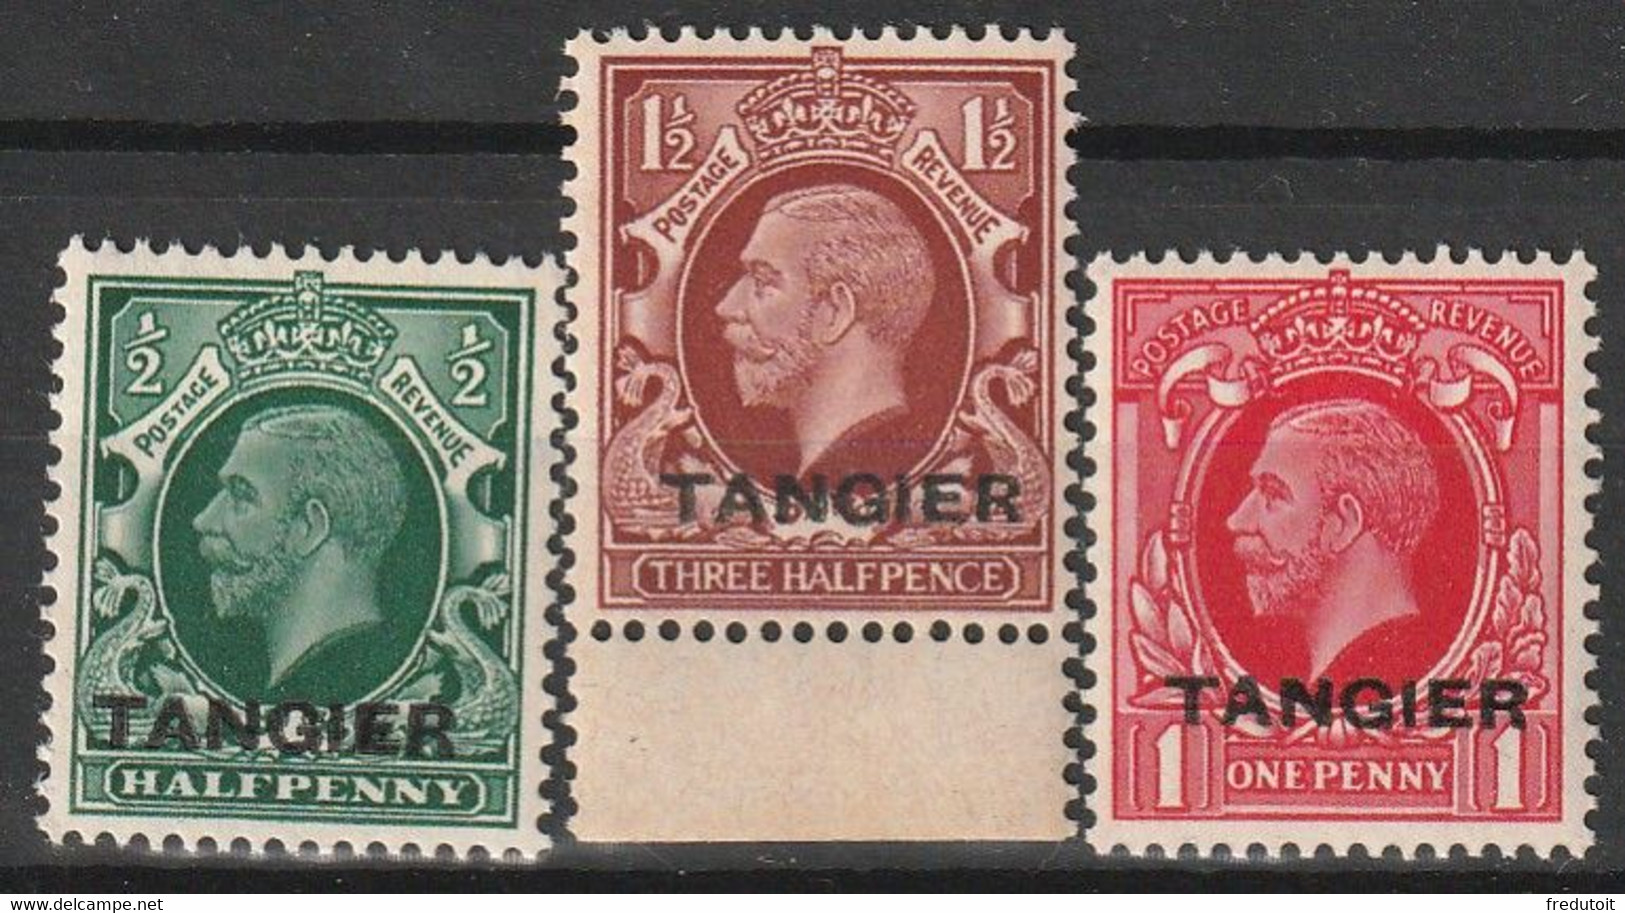 MAROC - Bureaux Anglais : Tanger - N°5/7 ** (1935)  George V - Postämter In Marokko/Tanger (...-1958)